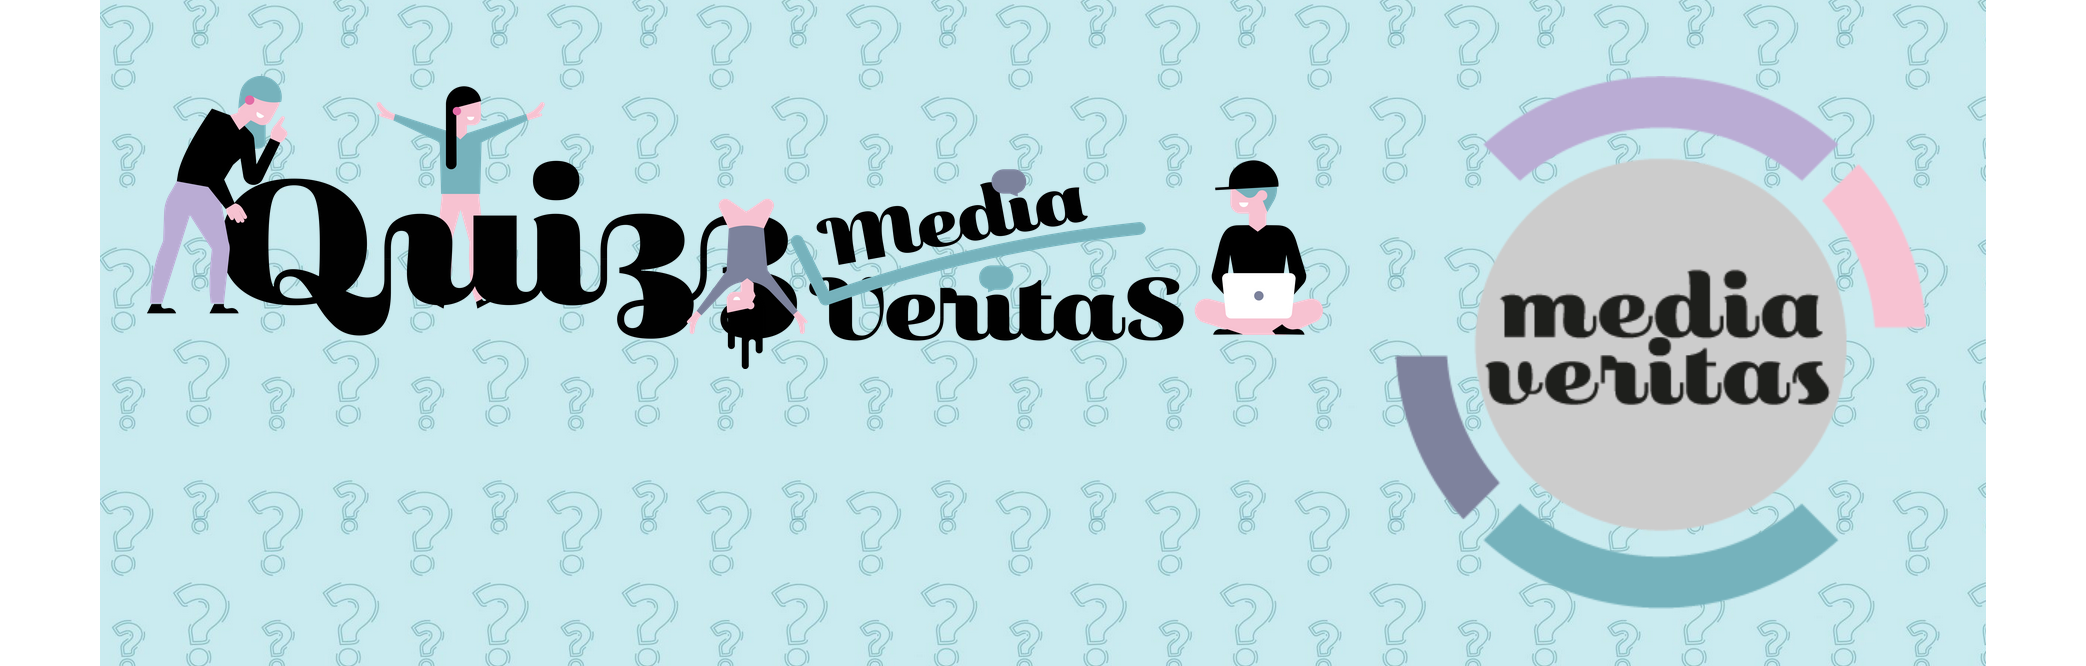 Associação Portuguesa de Imprensa: Media Veritas desenvolve "quiz" para jovens sobre desinformação